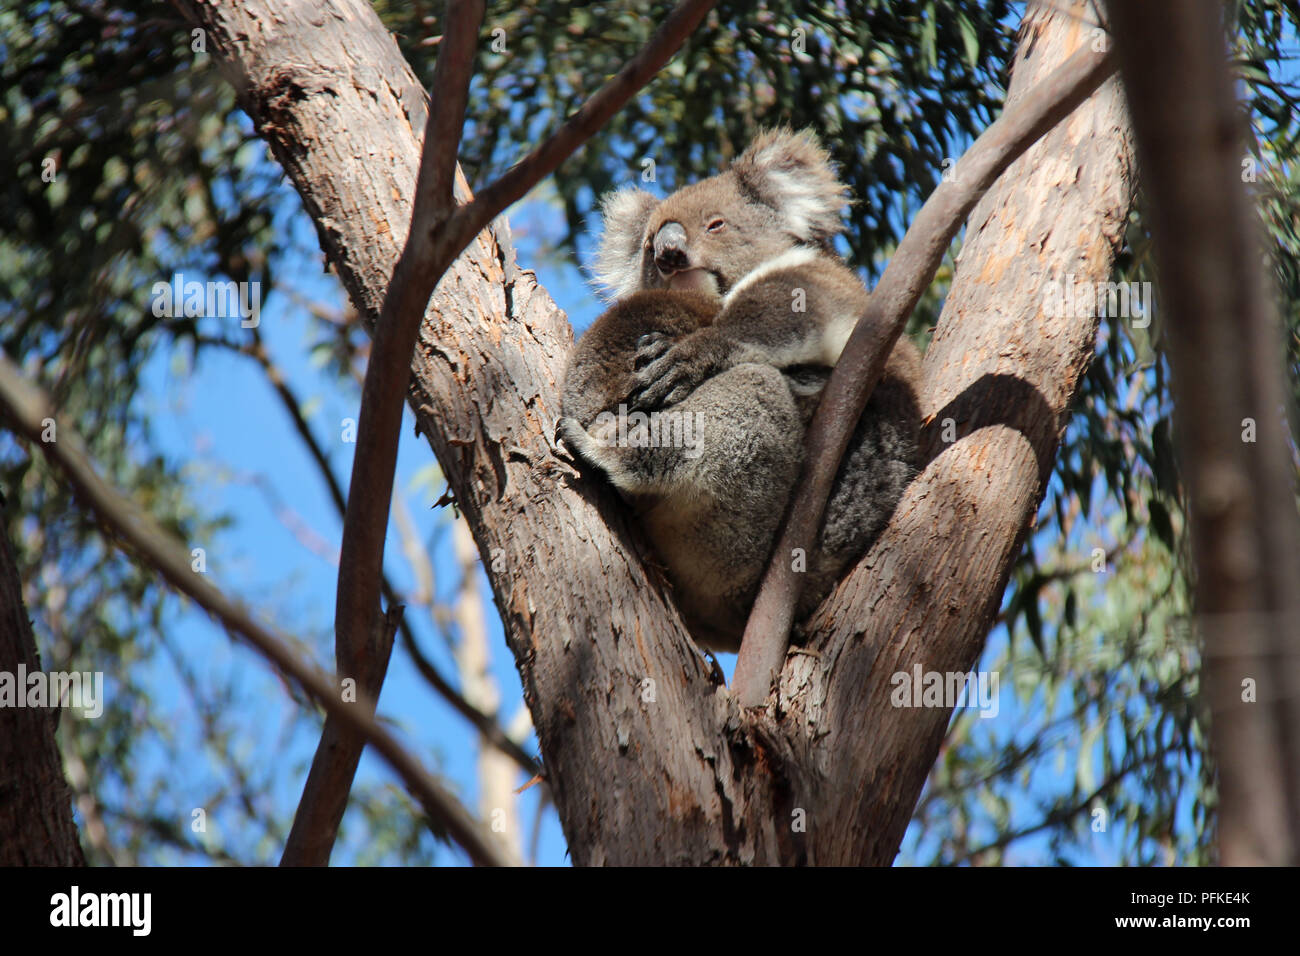 Koalas in a forest on Kangaroo Island (Australia). Stock Photo